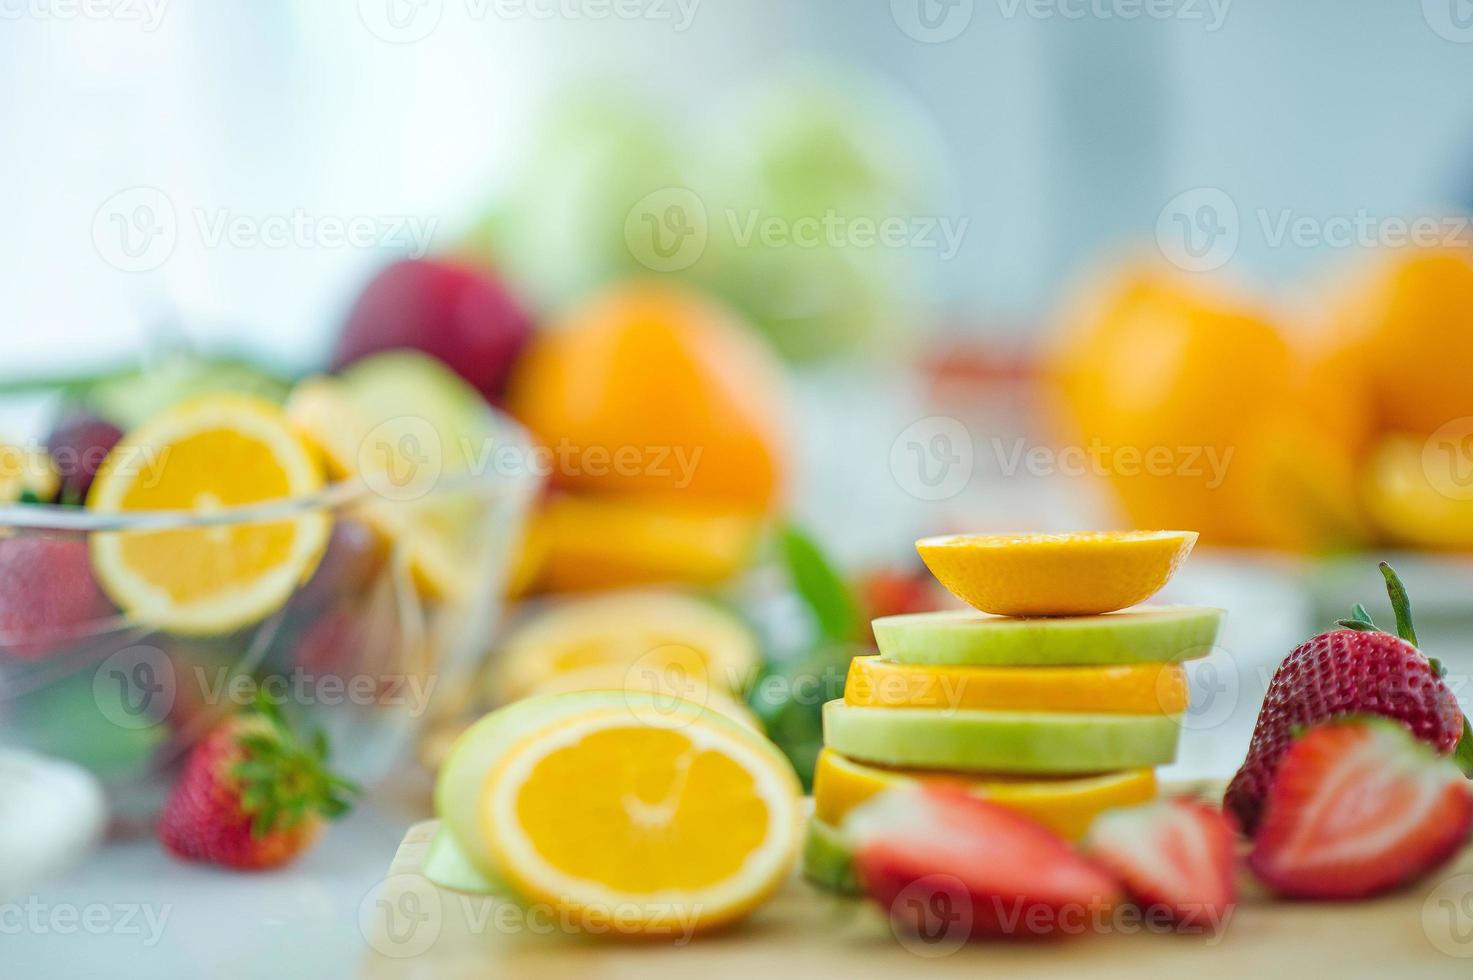 de vruchten van gezondheidsliefhebber gezond fruit en gezondheidszorg om gezond voedsel te eten. naar de huid. het fruit wordt in een mooie tafel geplaatst, appel abrikoos, banaan, sinaasappel, draak, geplaatst foto